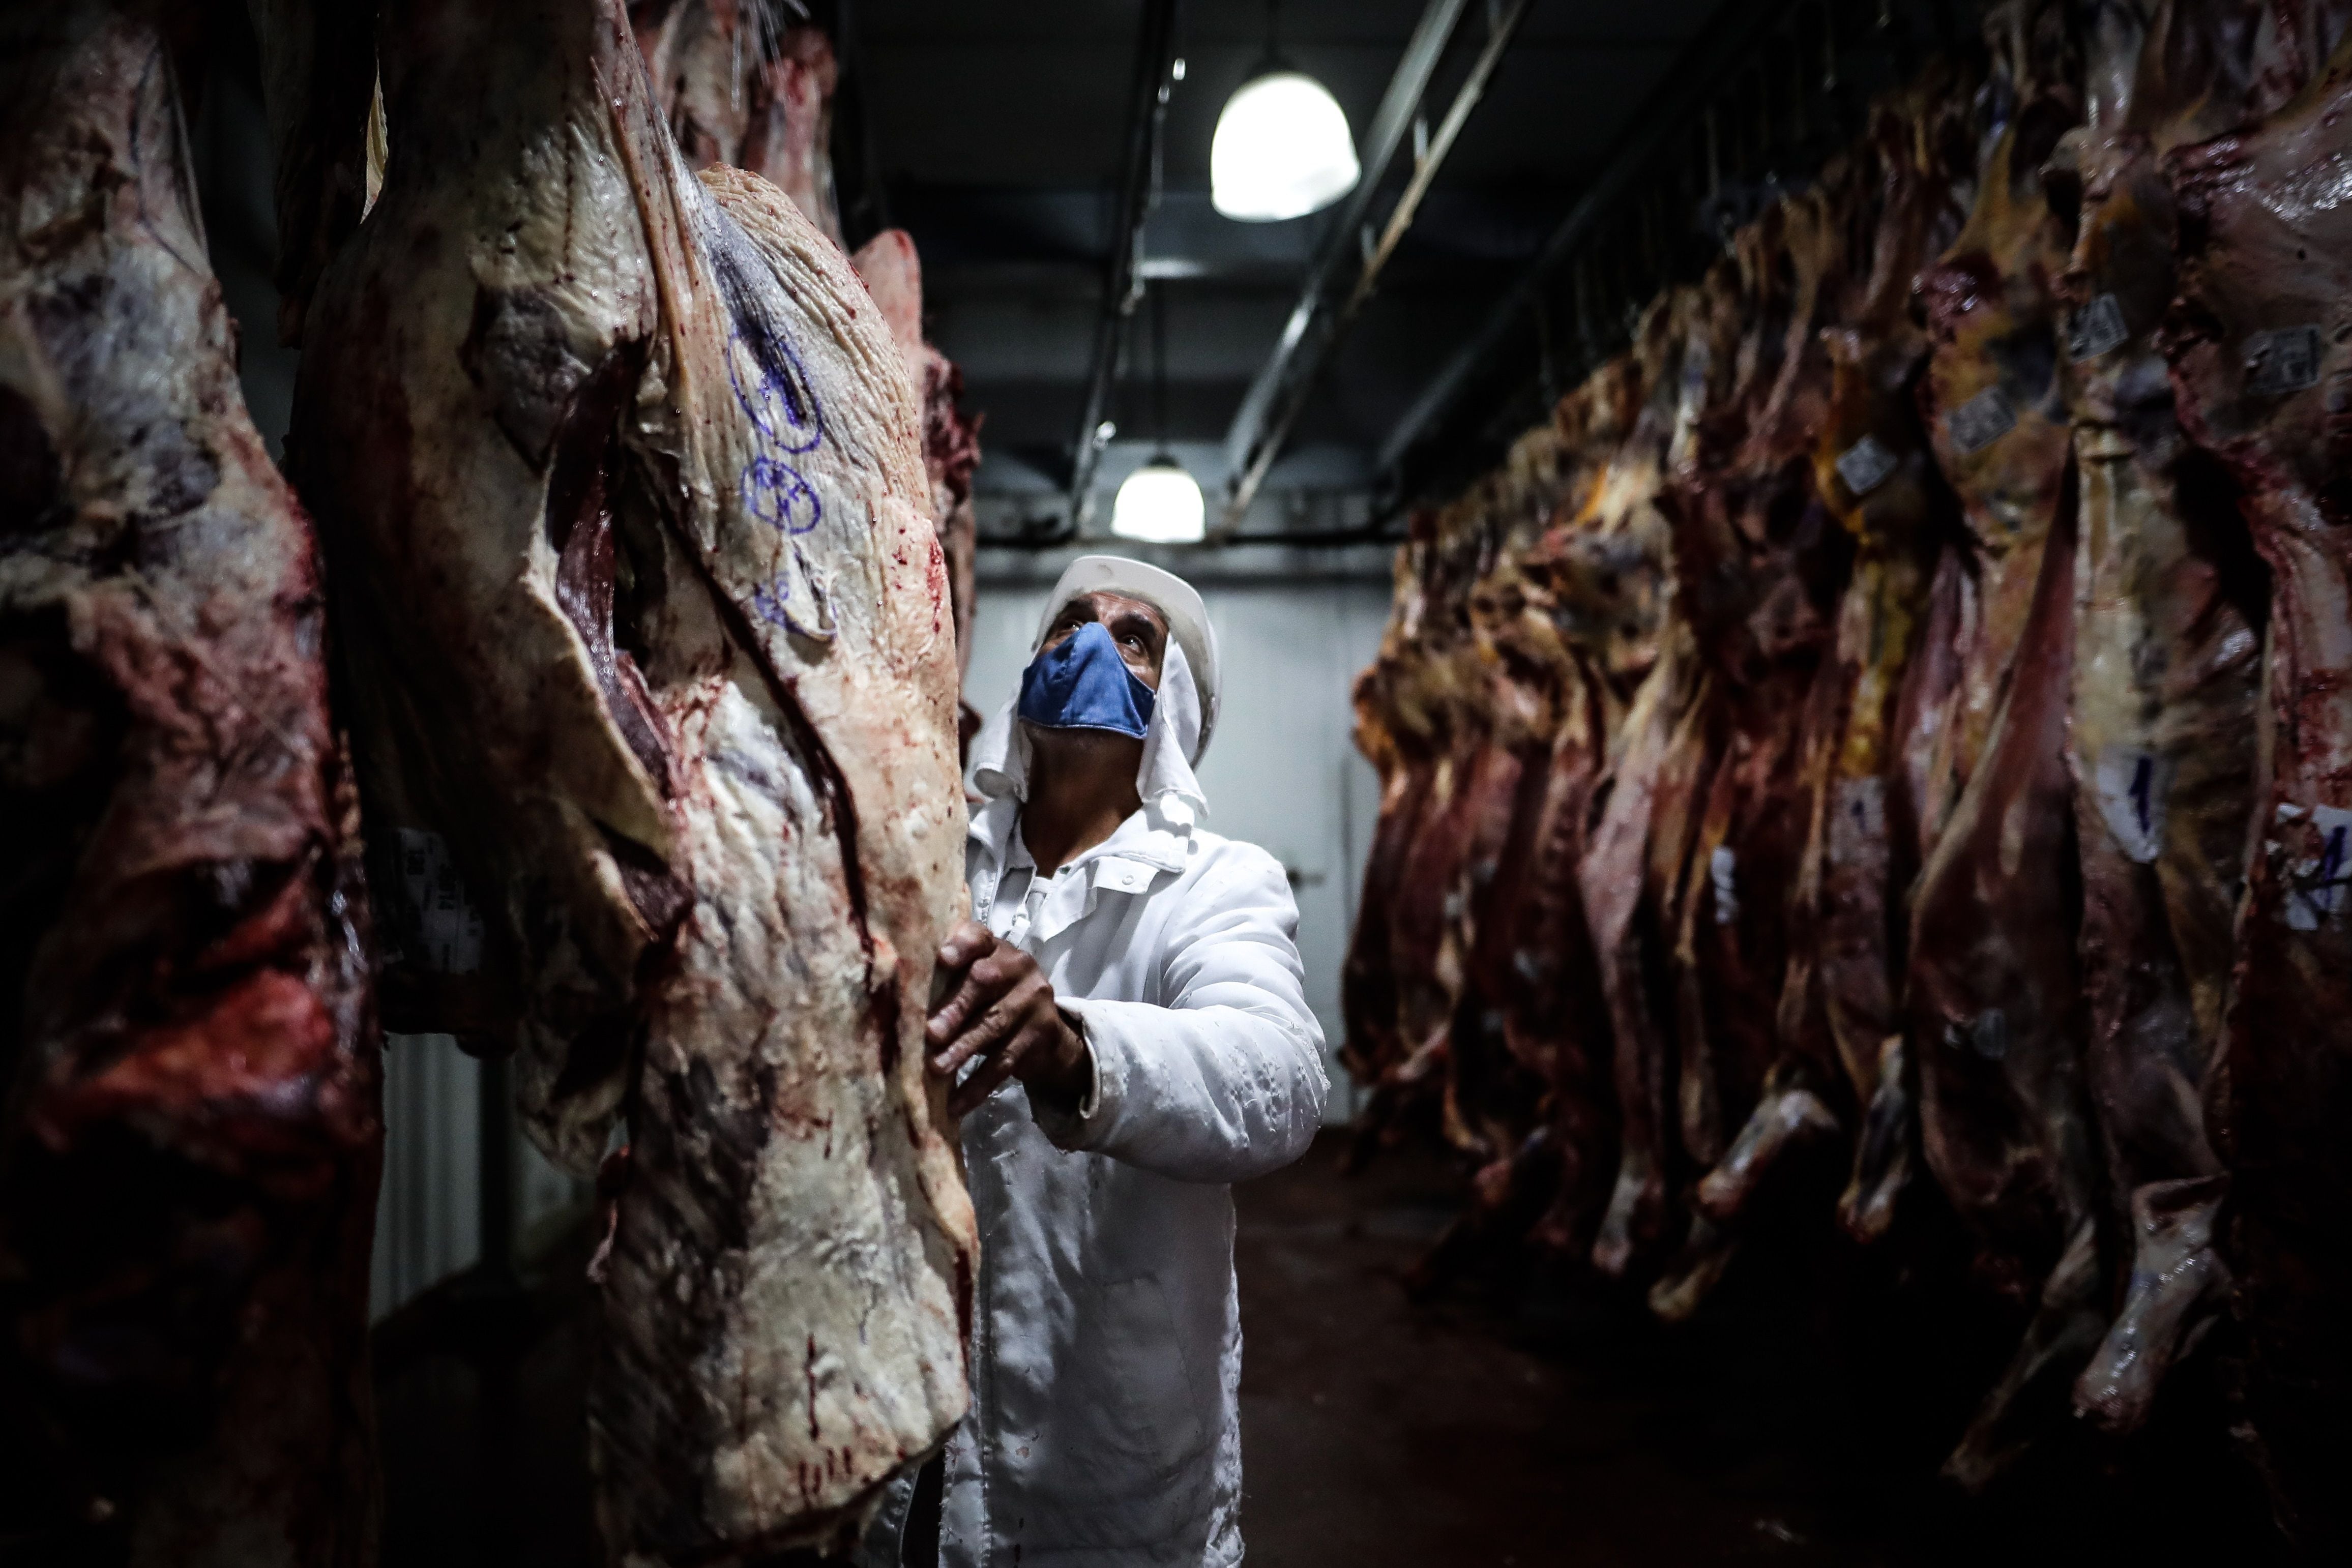 Los precios de la carne se dispararon en agosto y empujaron el promedio de aumentos hacia arriba. EFE